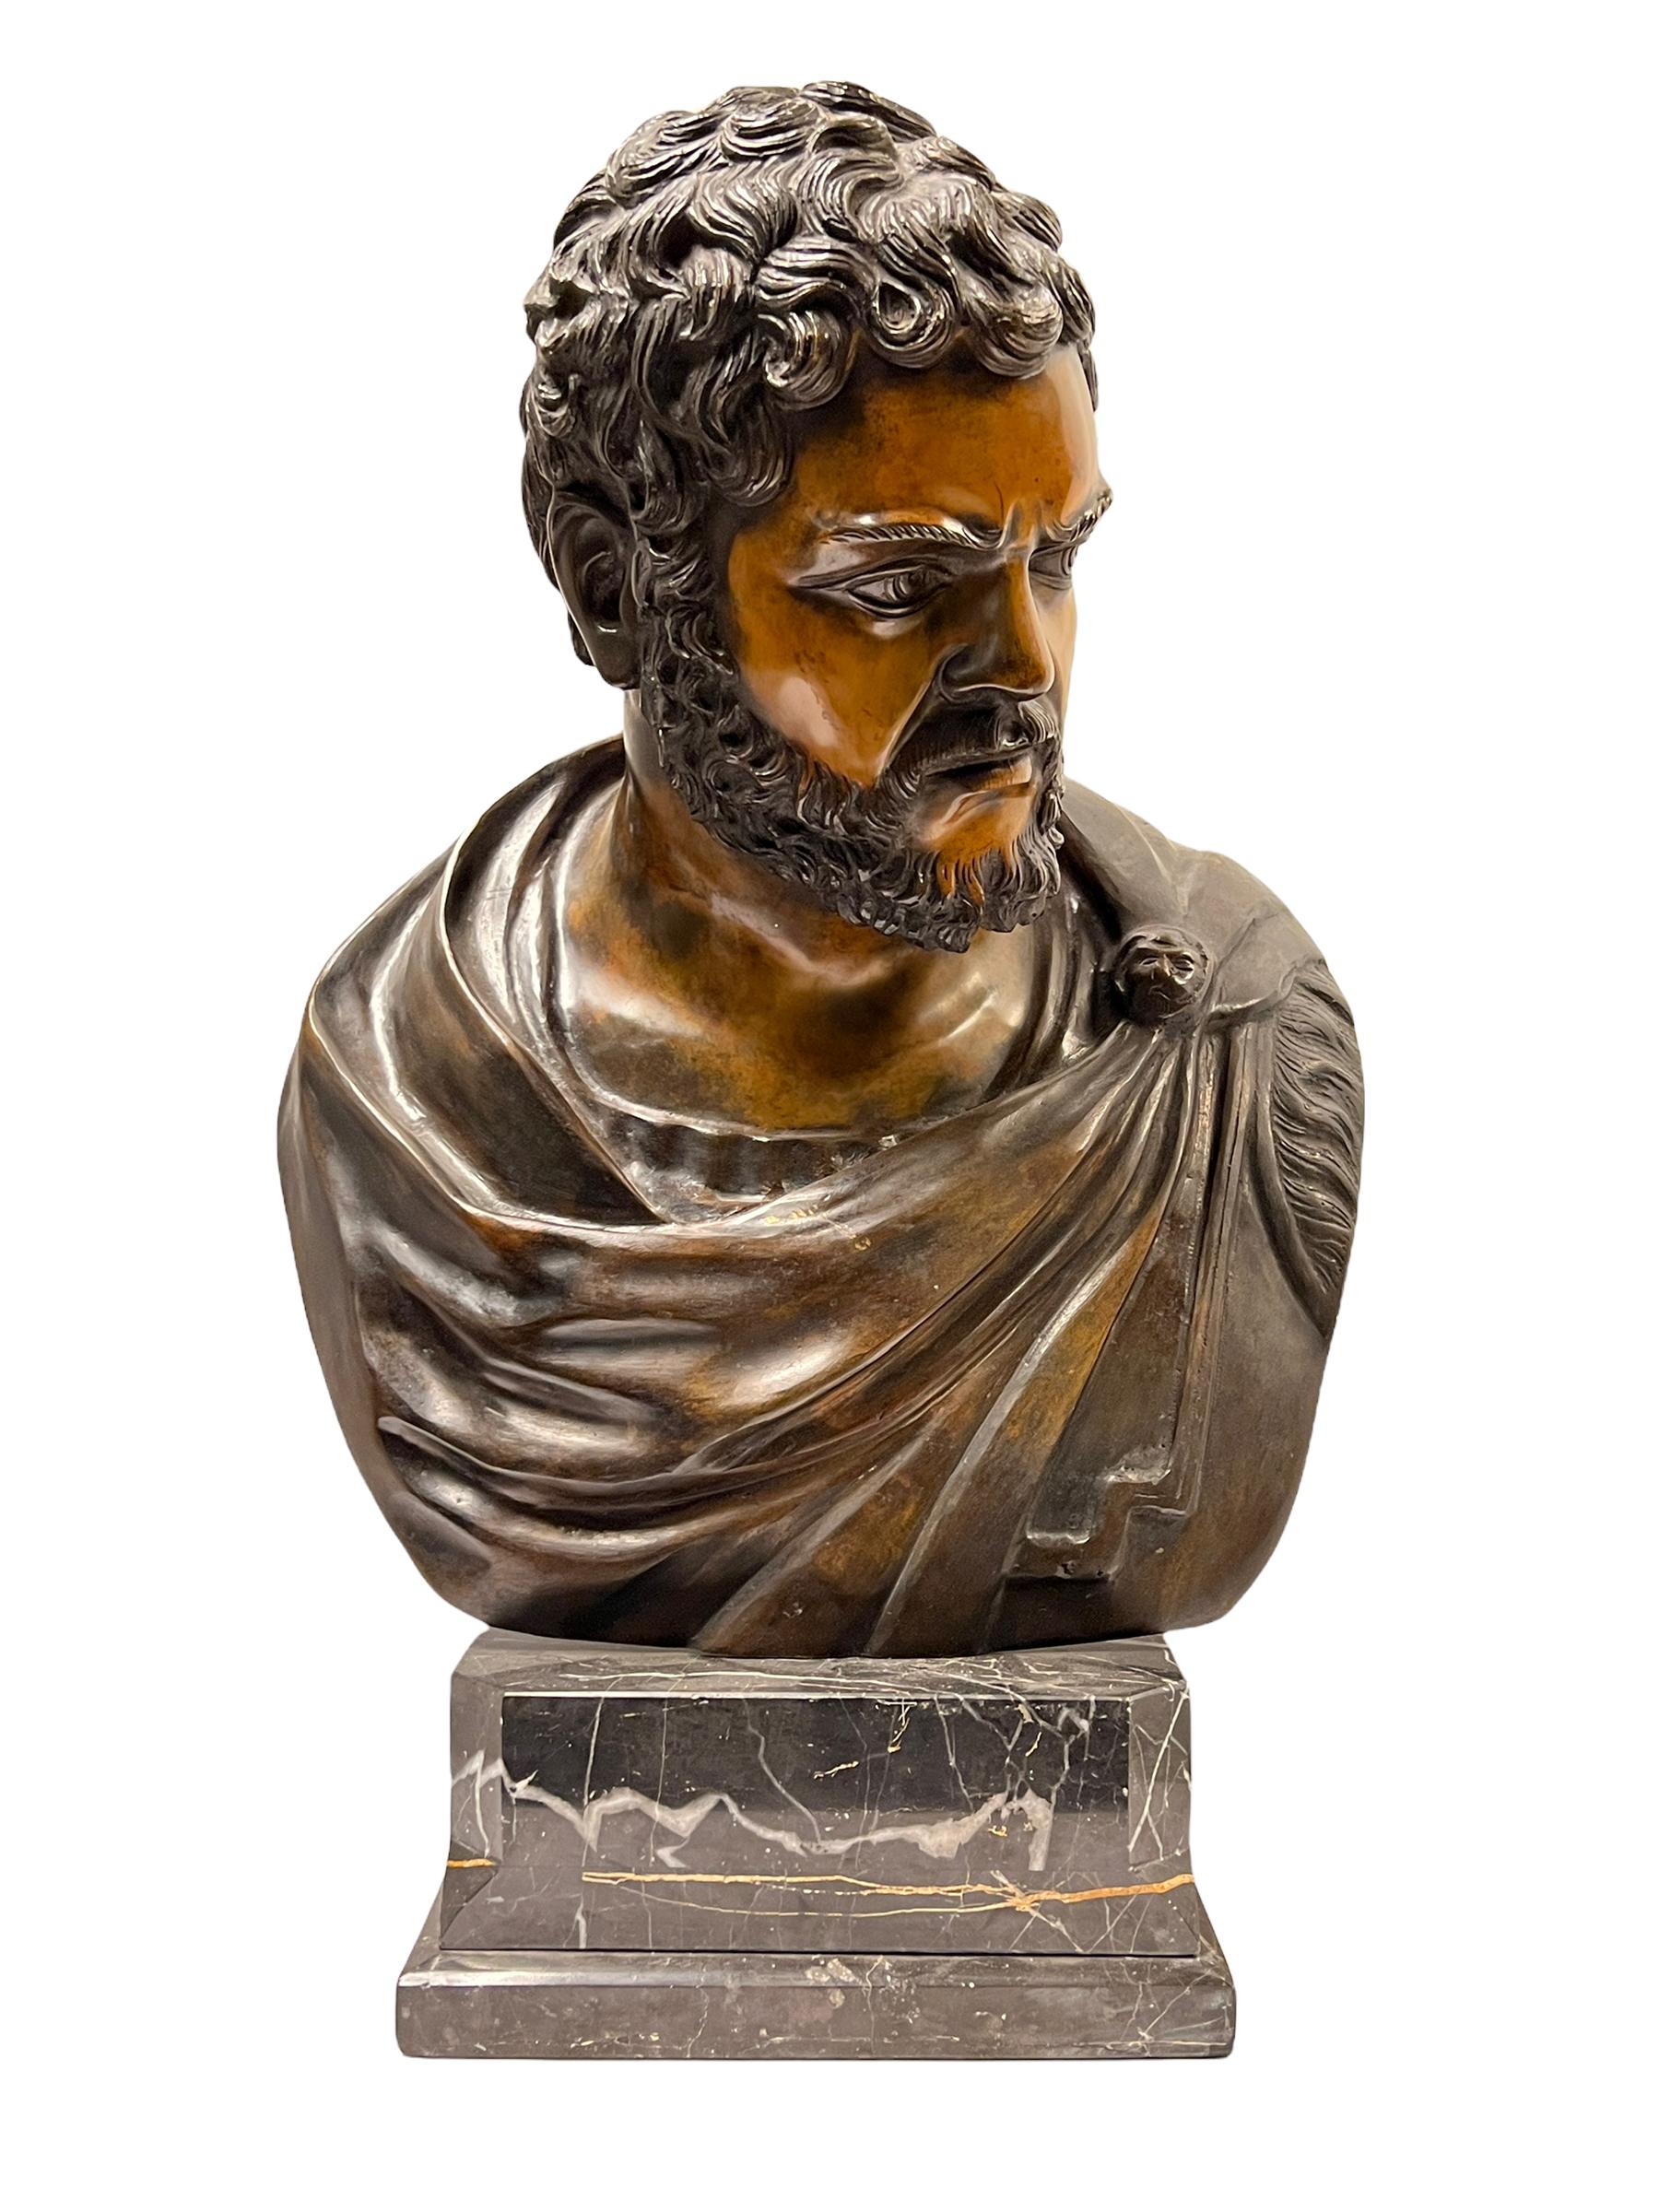 grand et impressionnant buste en bronze italien du milieu du siècle dernier représentant un empereur romain sur une base en marbre.